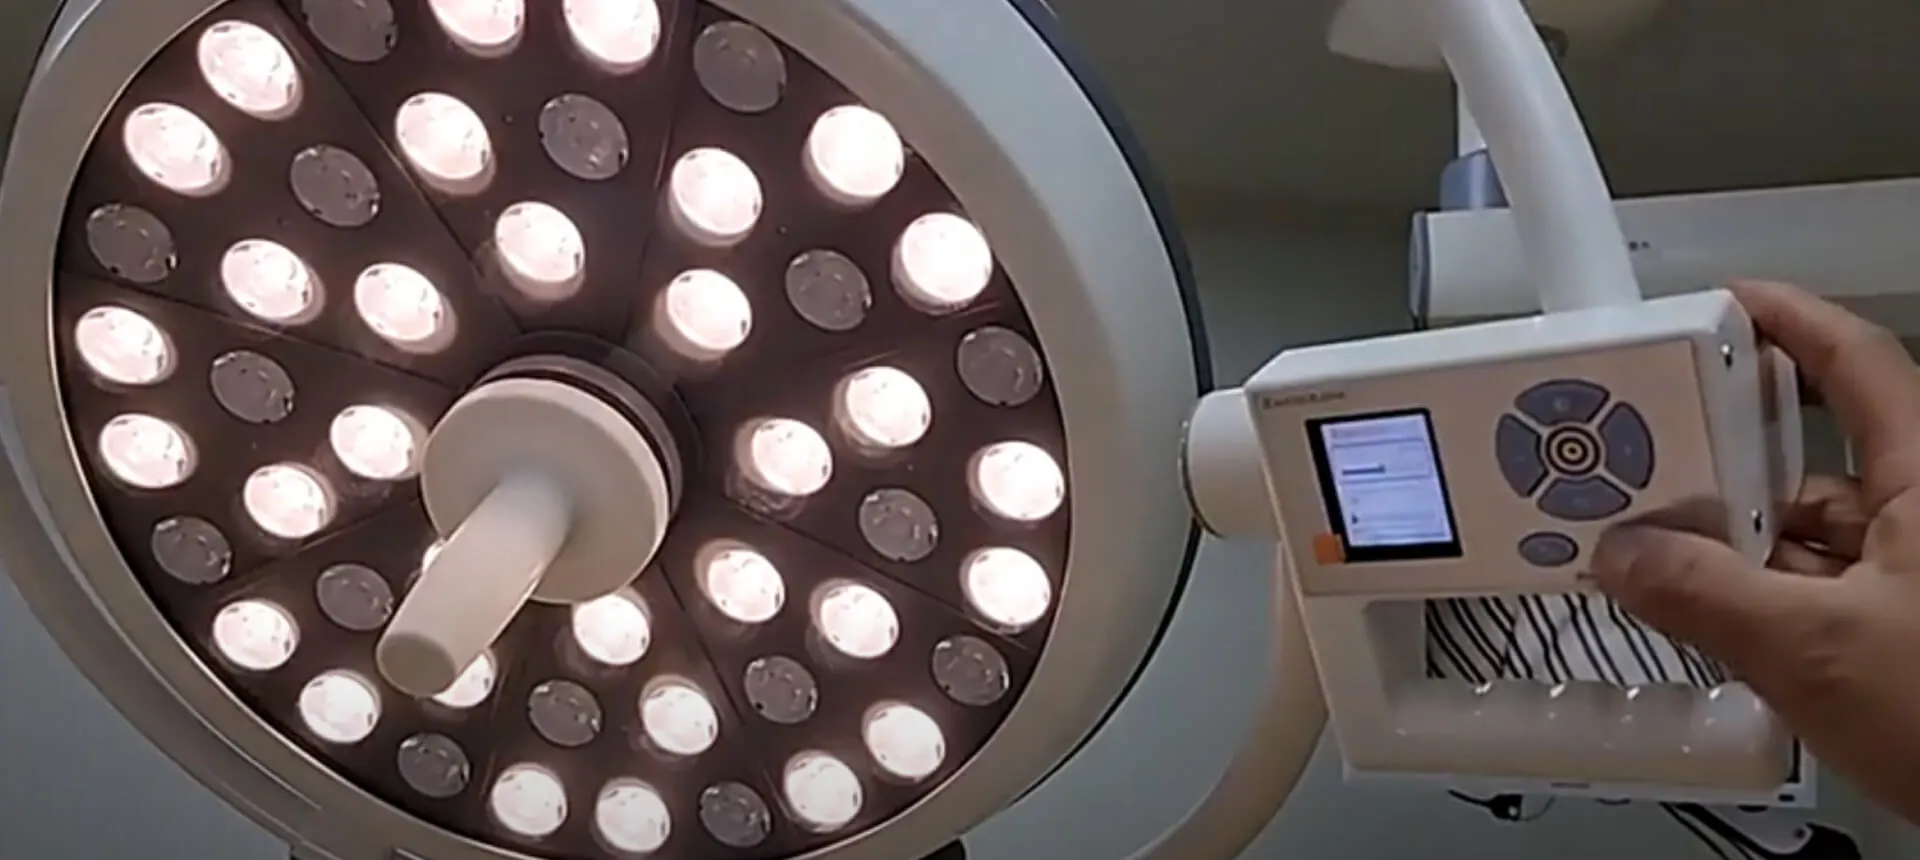 Lampu operasi bedah Vet Display Video